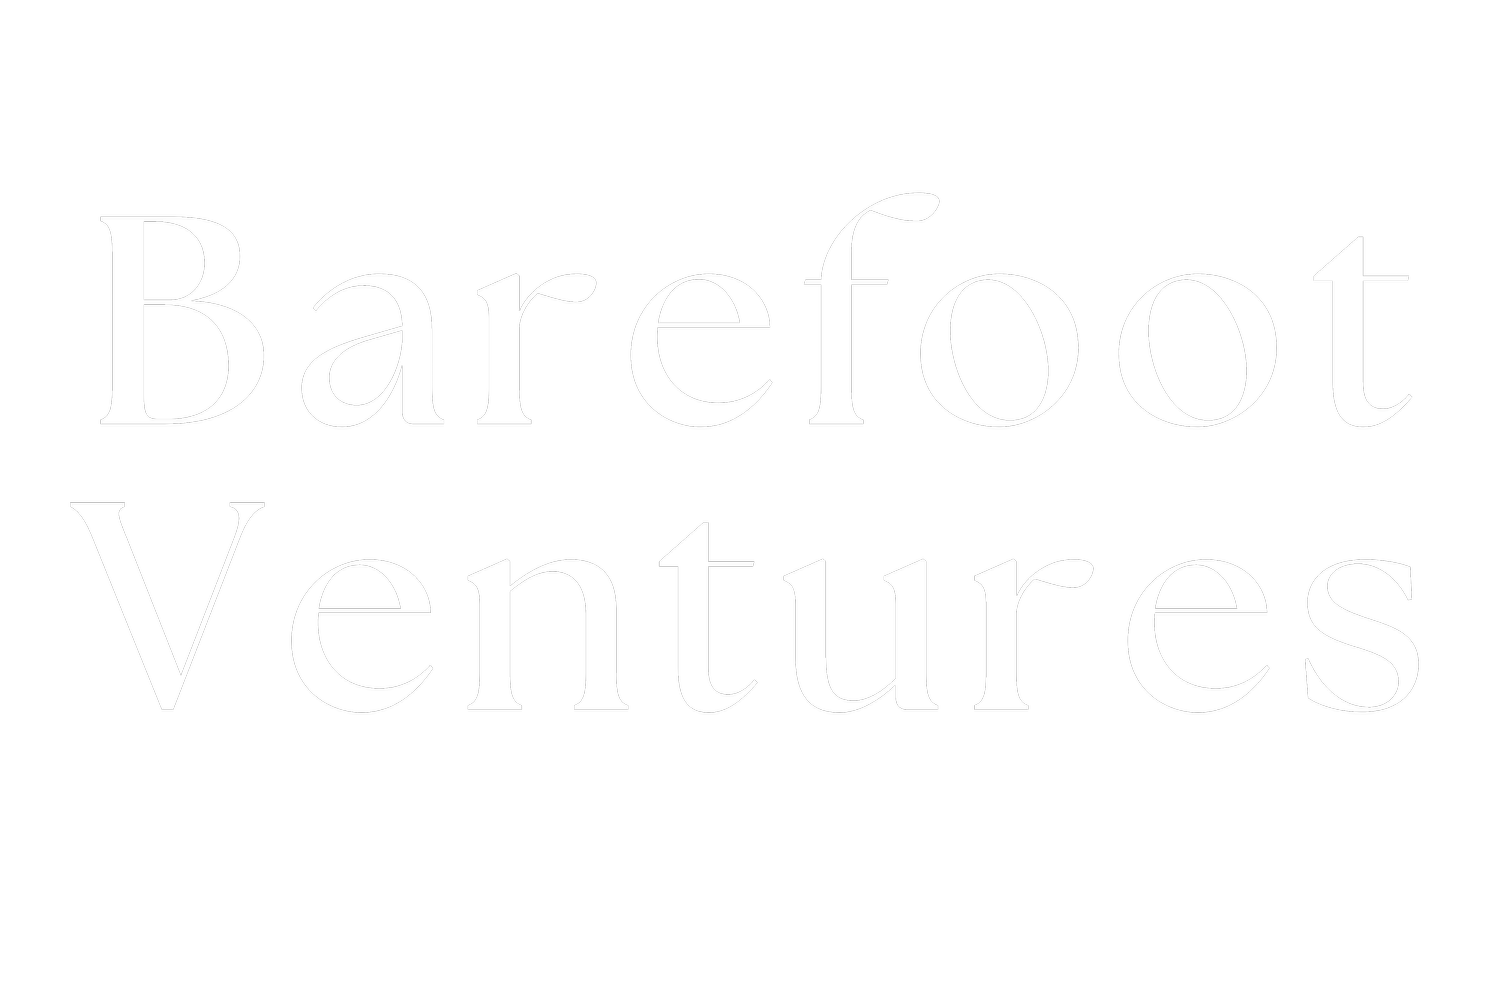 Barefoot Ventures